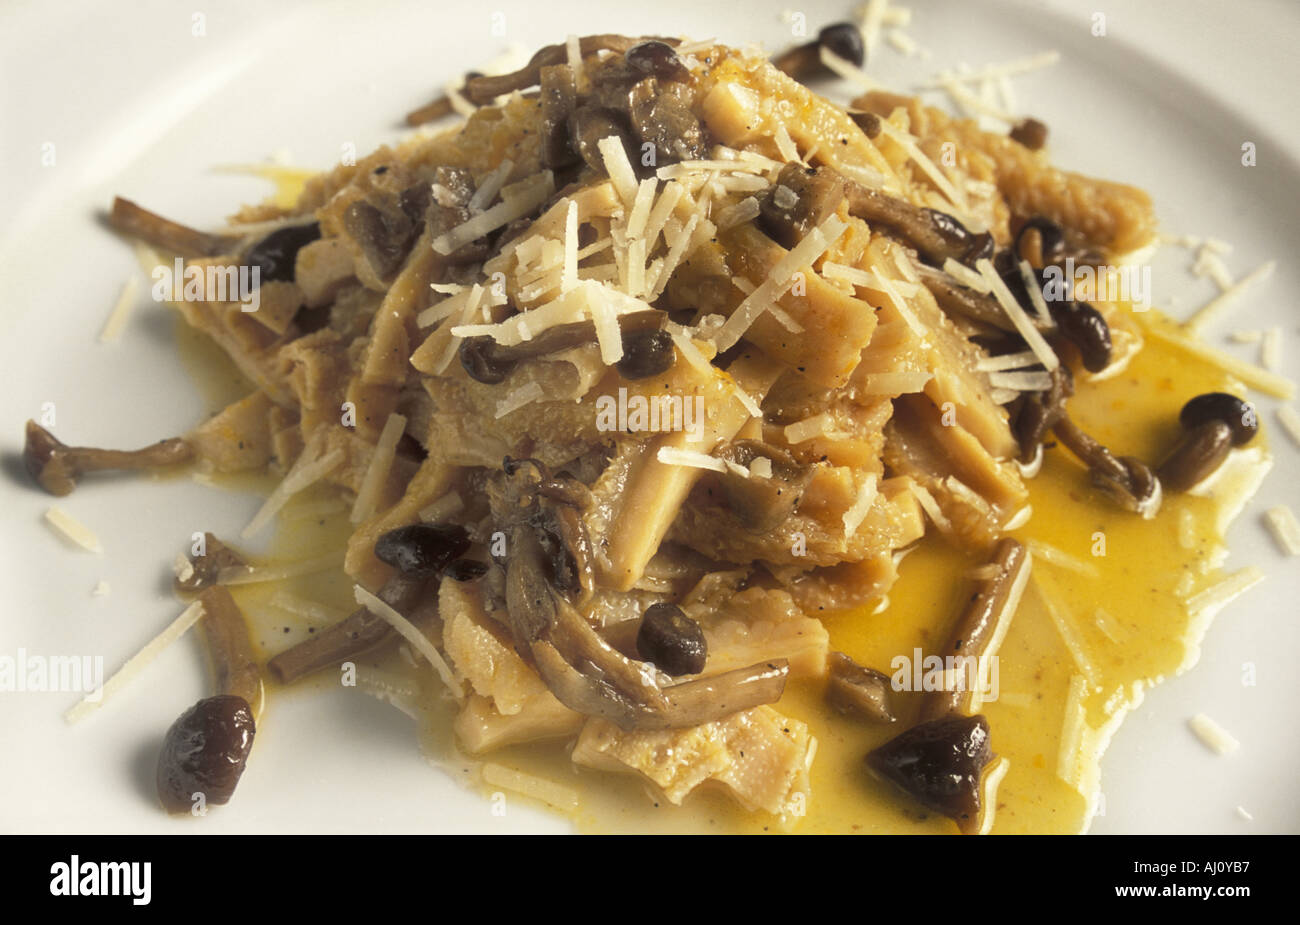 Callos con setas y queso parmesano Forlï¿½ de Emilia Romagna de Italia Foto de stock